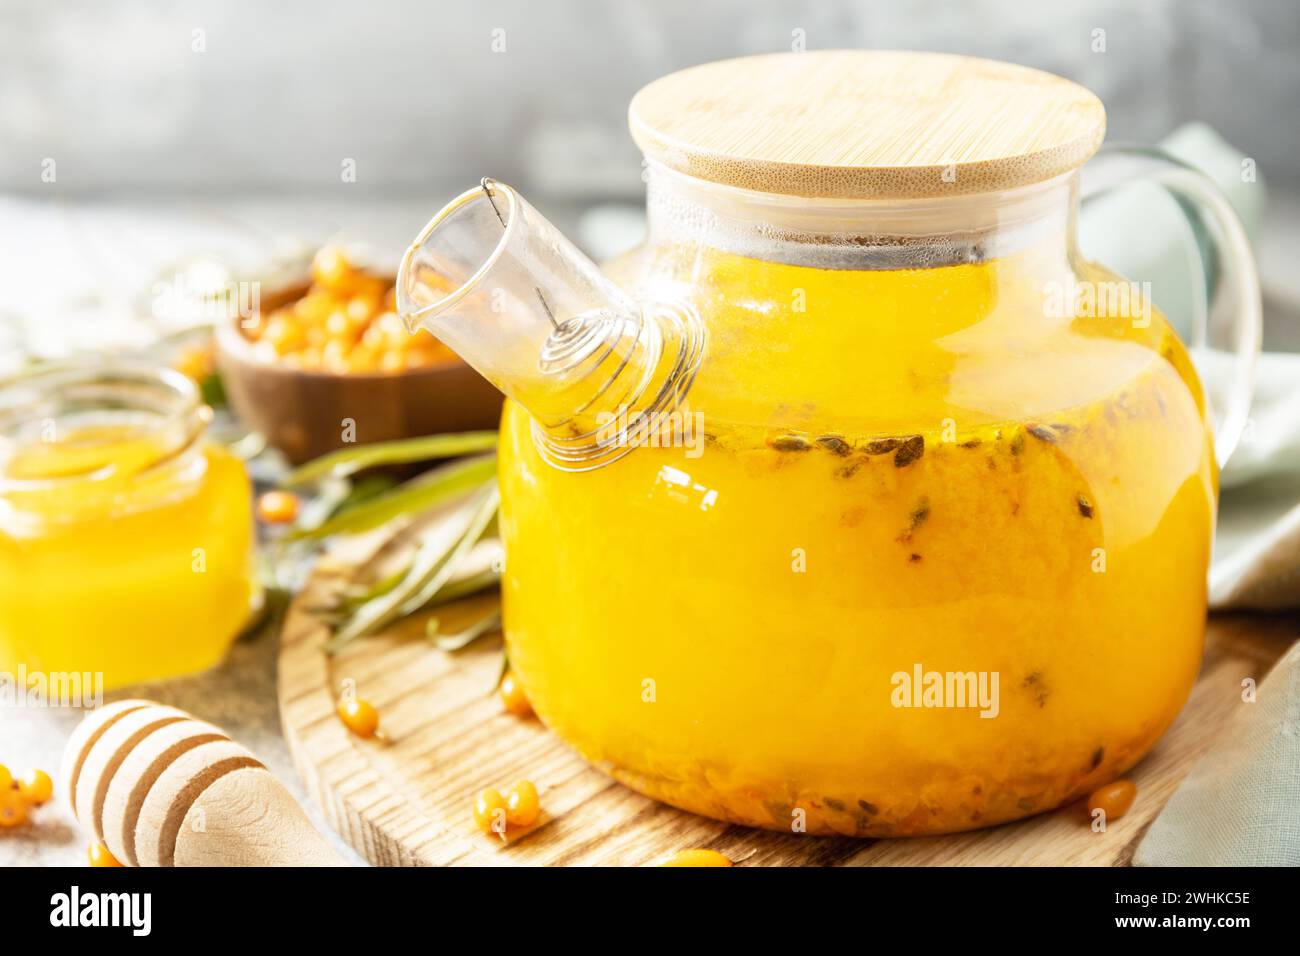 Mare sano â€‹â€‹â€‹â€‹tè con miele su fondo di pietra grigia. Tè autunnale, bevanda di stagione alle bacche. Foto Stock